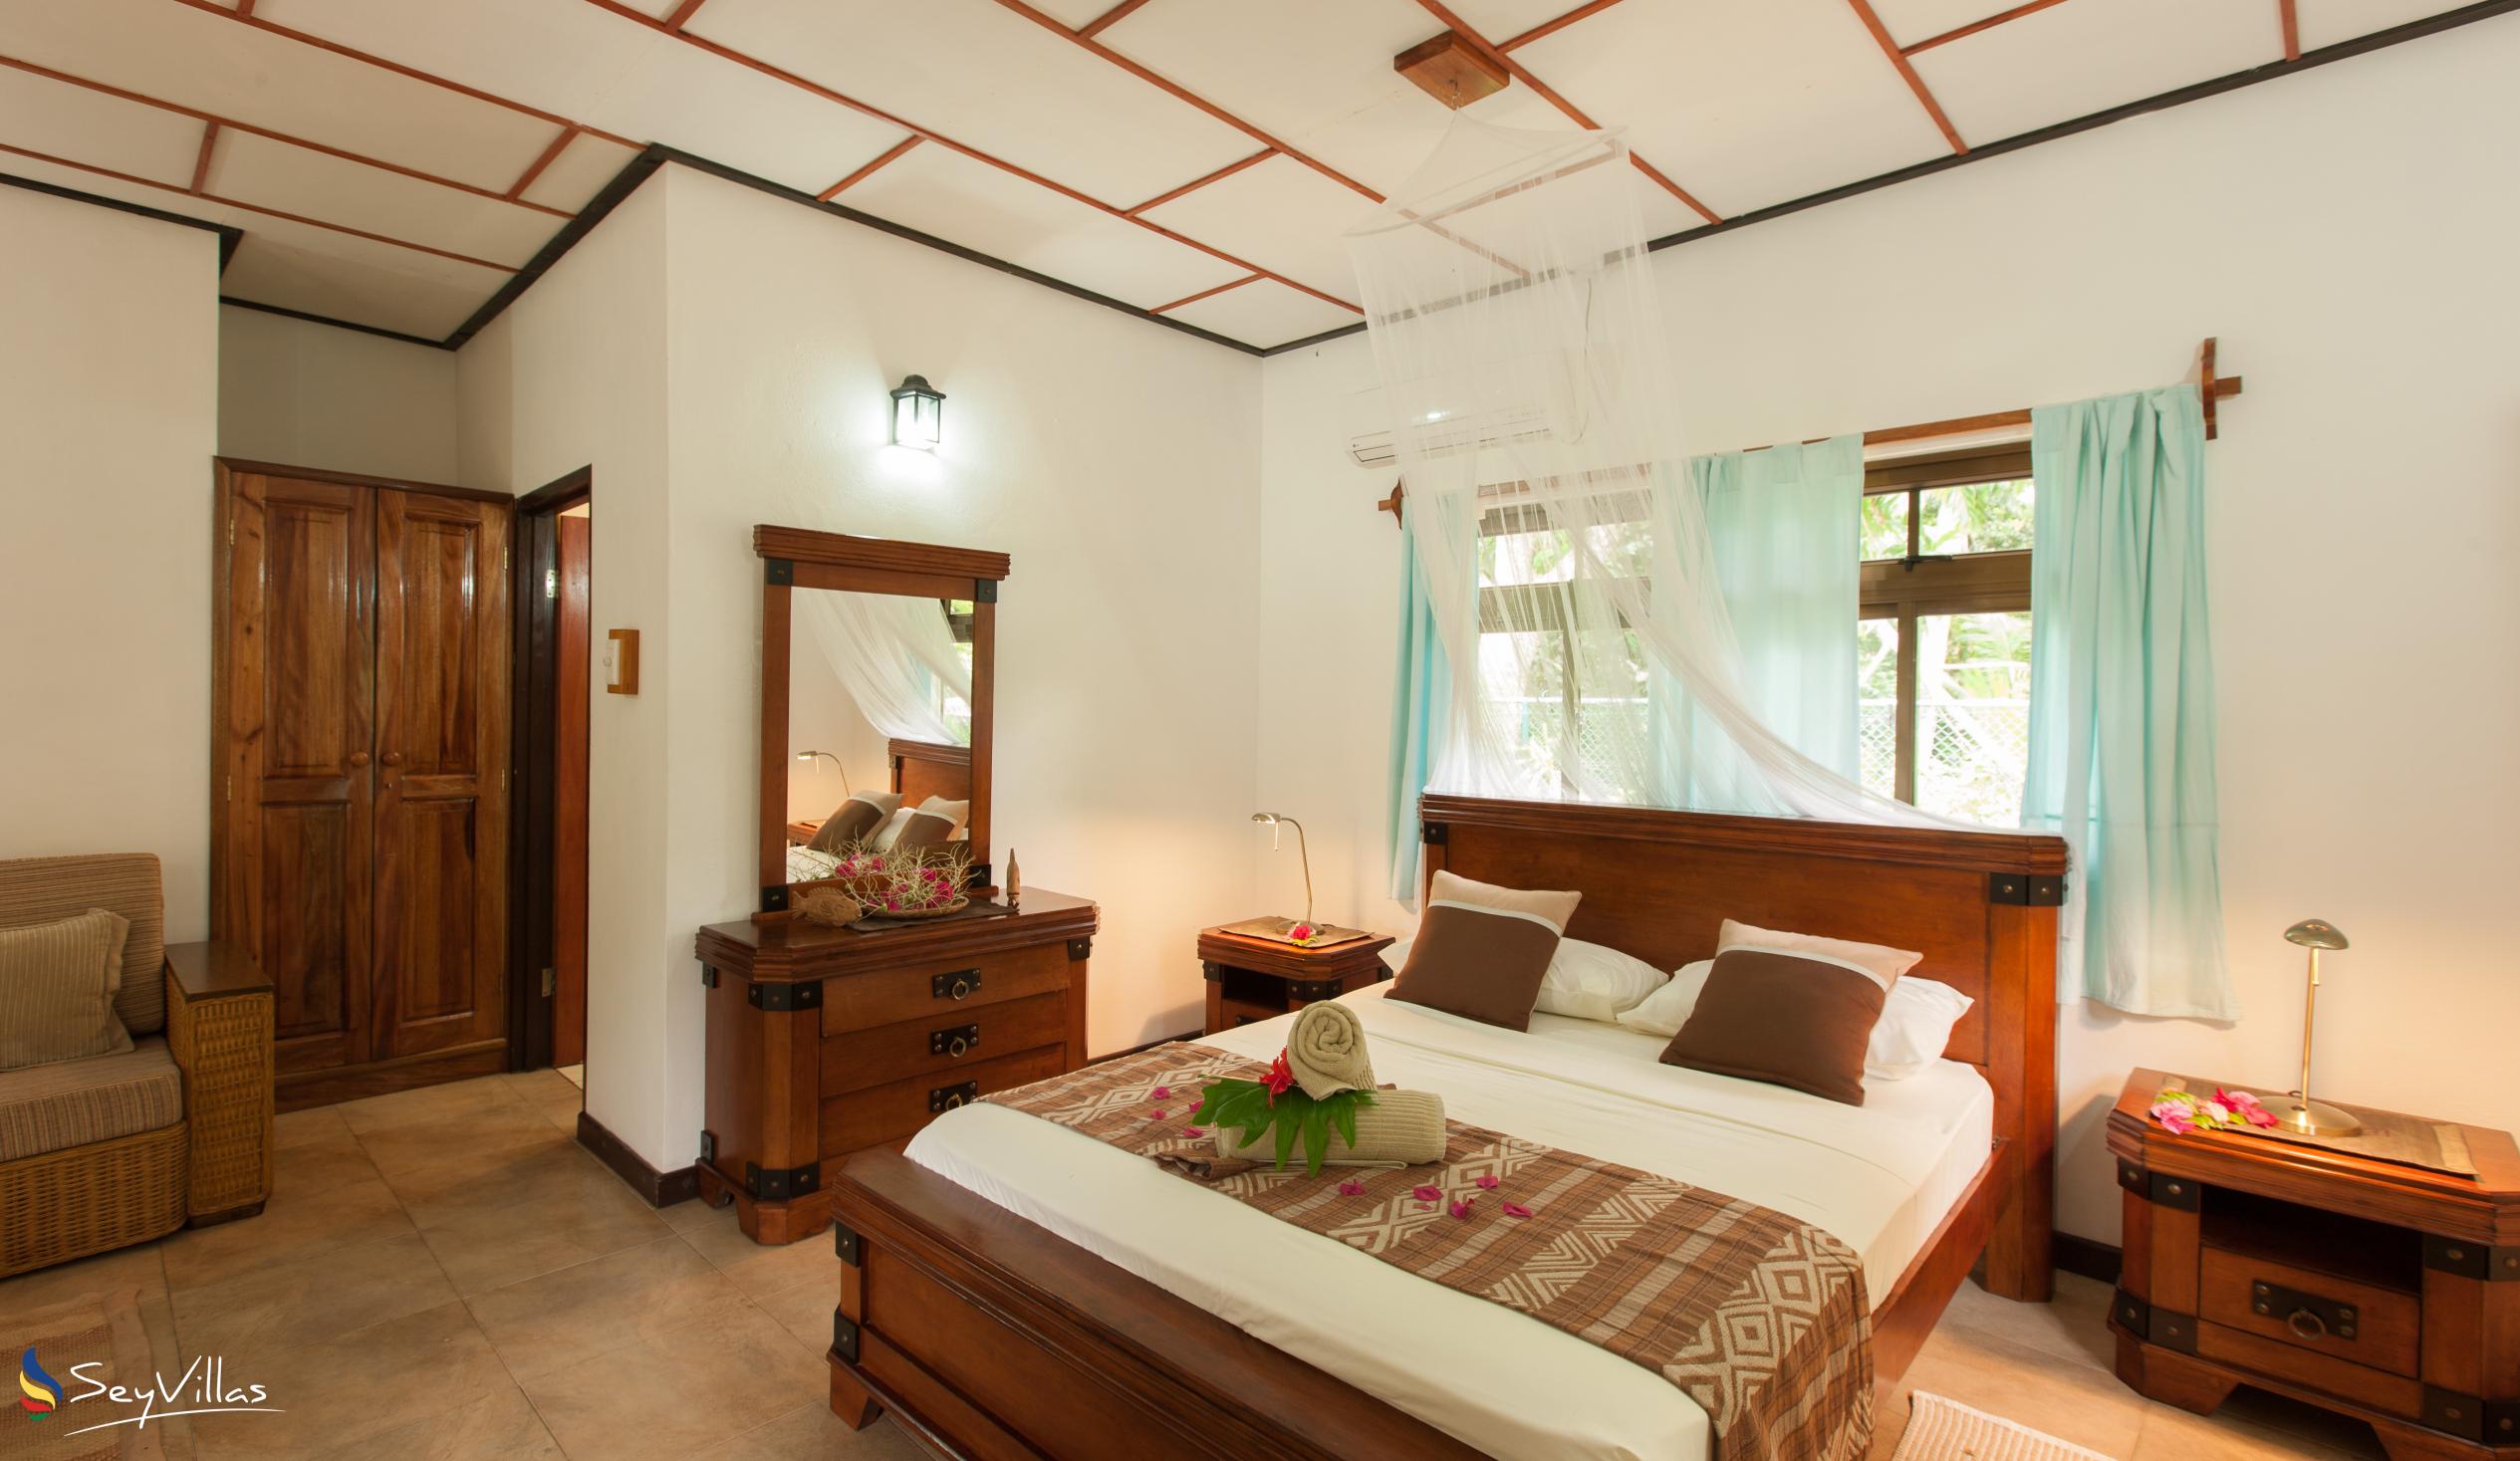 Photo 100: Domaine Les Rochers - 2-Bedroom Bungalow Palmier - La Digue (Seychelles)